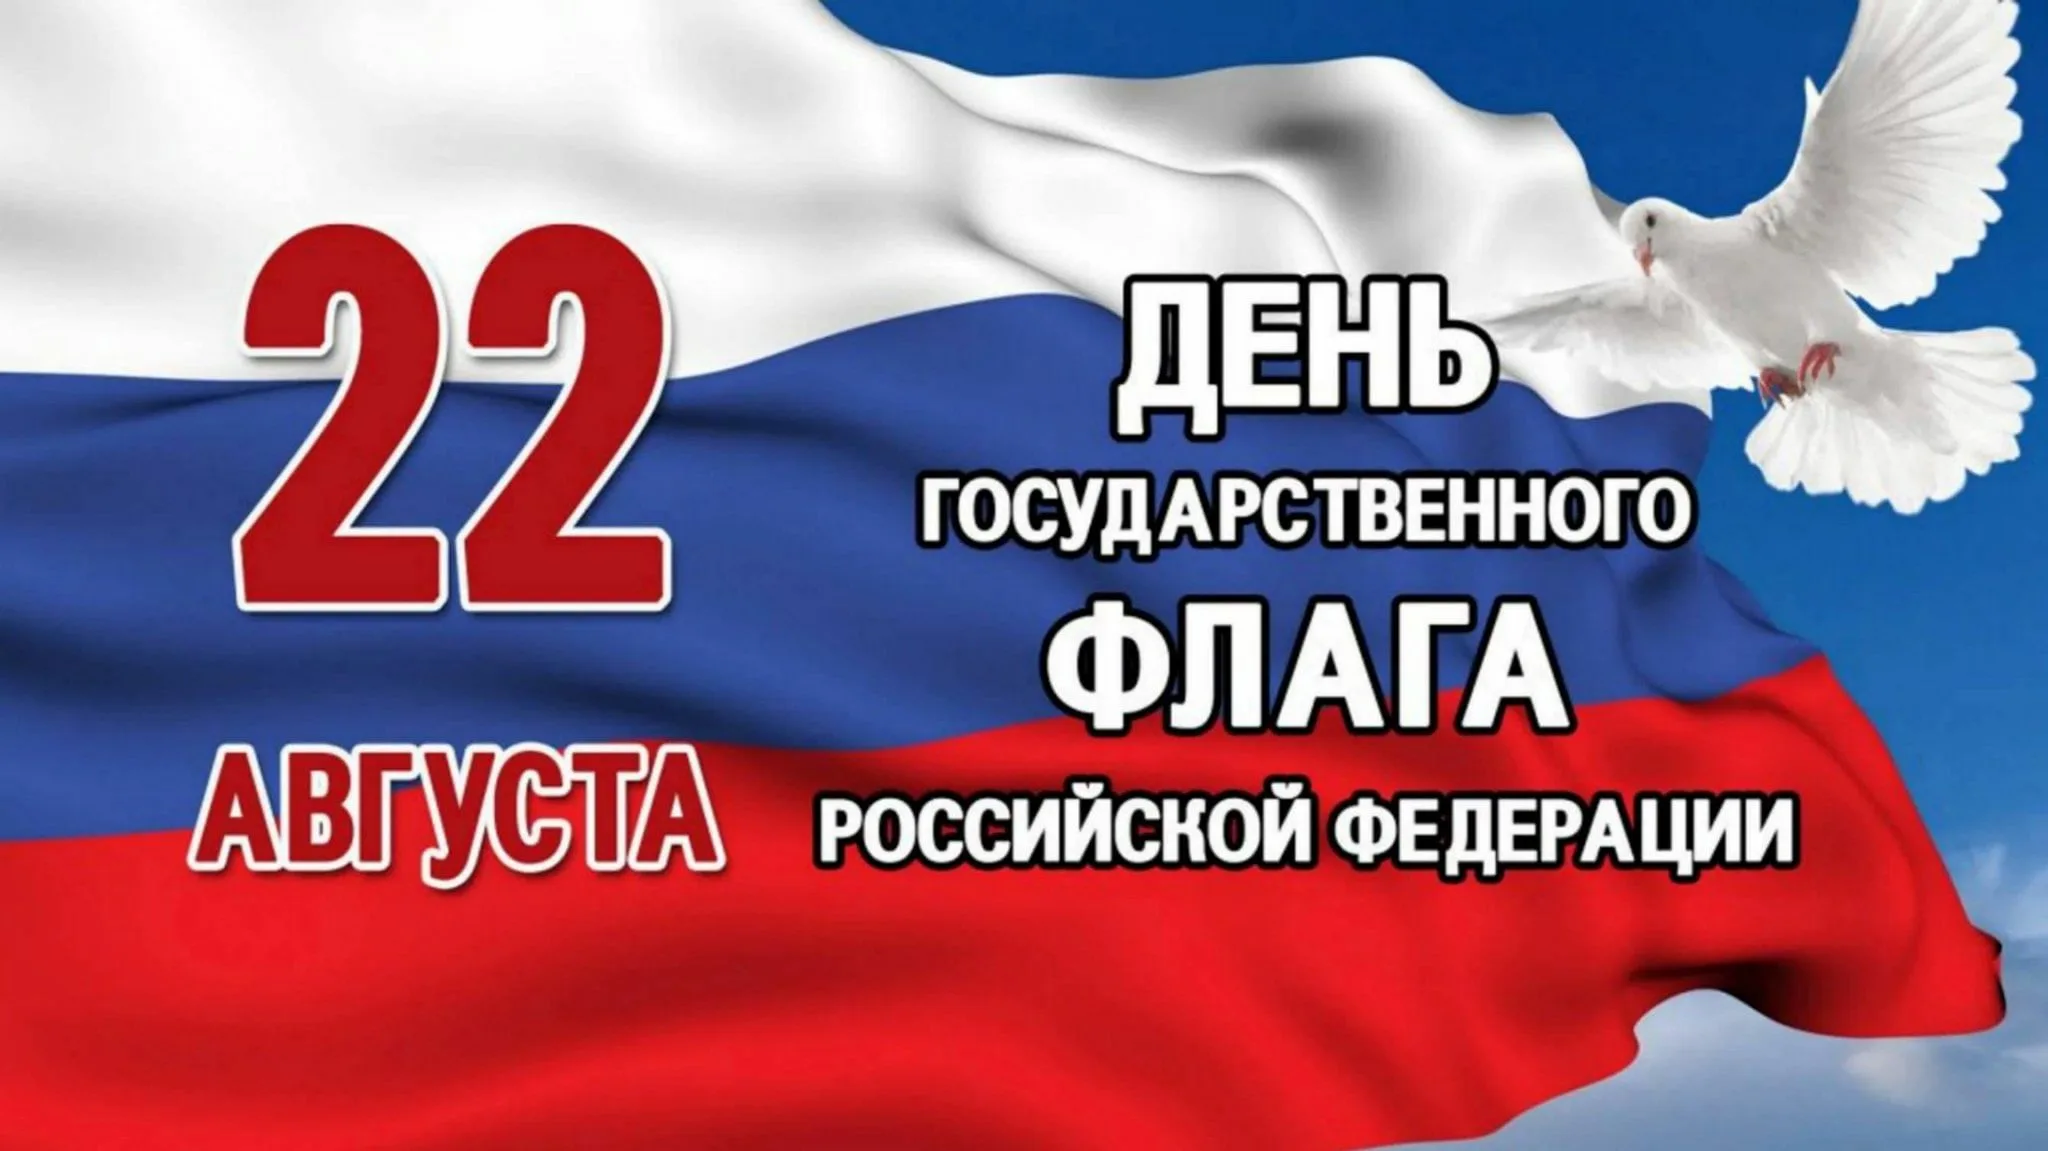 22 Августа день государственного флага Российской Федерации. 22 Августа в России отмечается день государственного флага. Флаг России с тенью. 22 Авгута день флага Росси. Когда отмечают день государственного флага